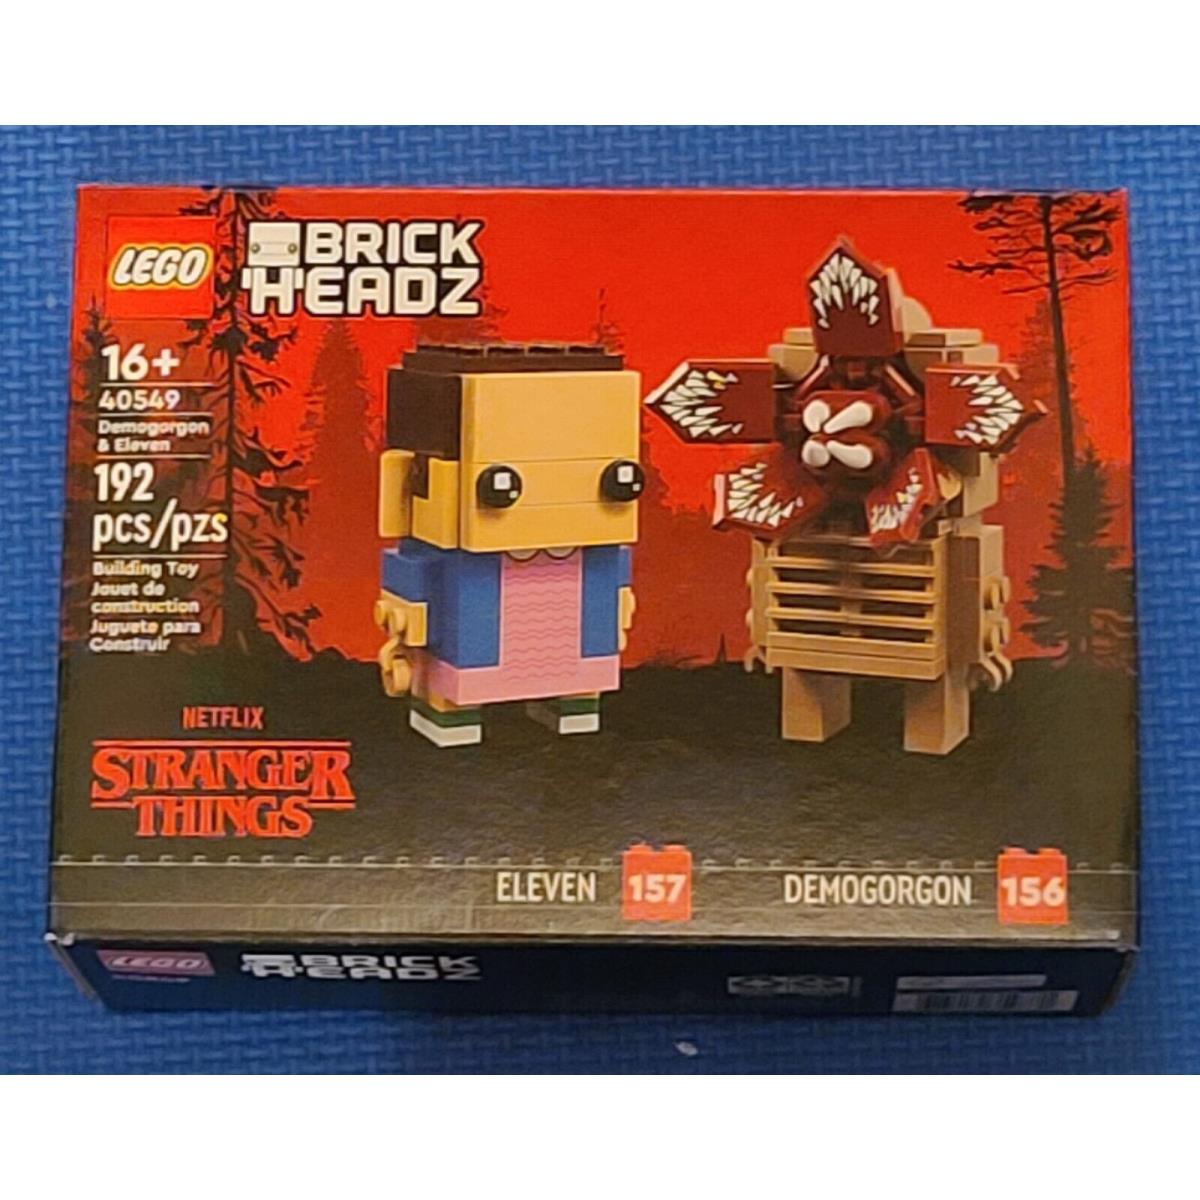 Lego 40549 Stranger Things Brickheadz Demogorgon Eleven Set